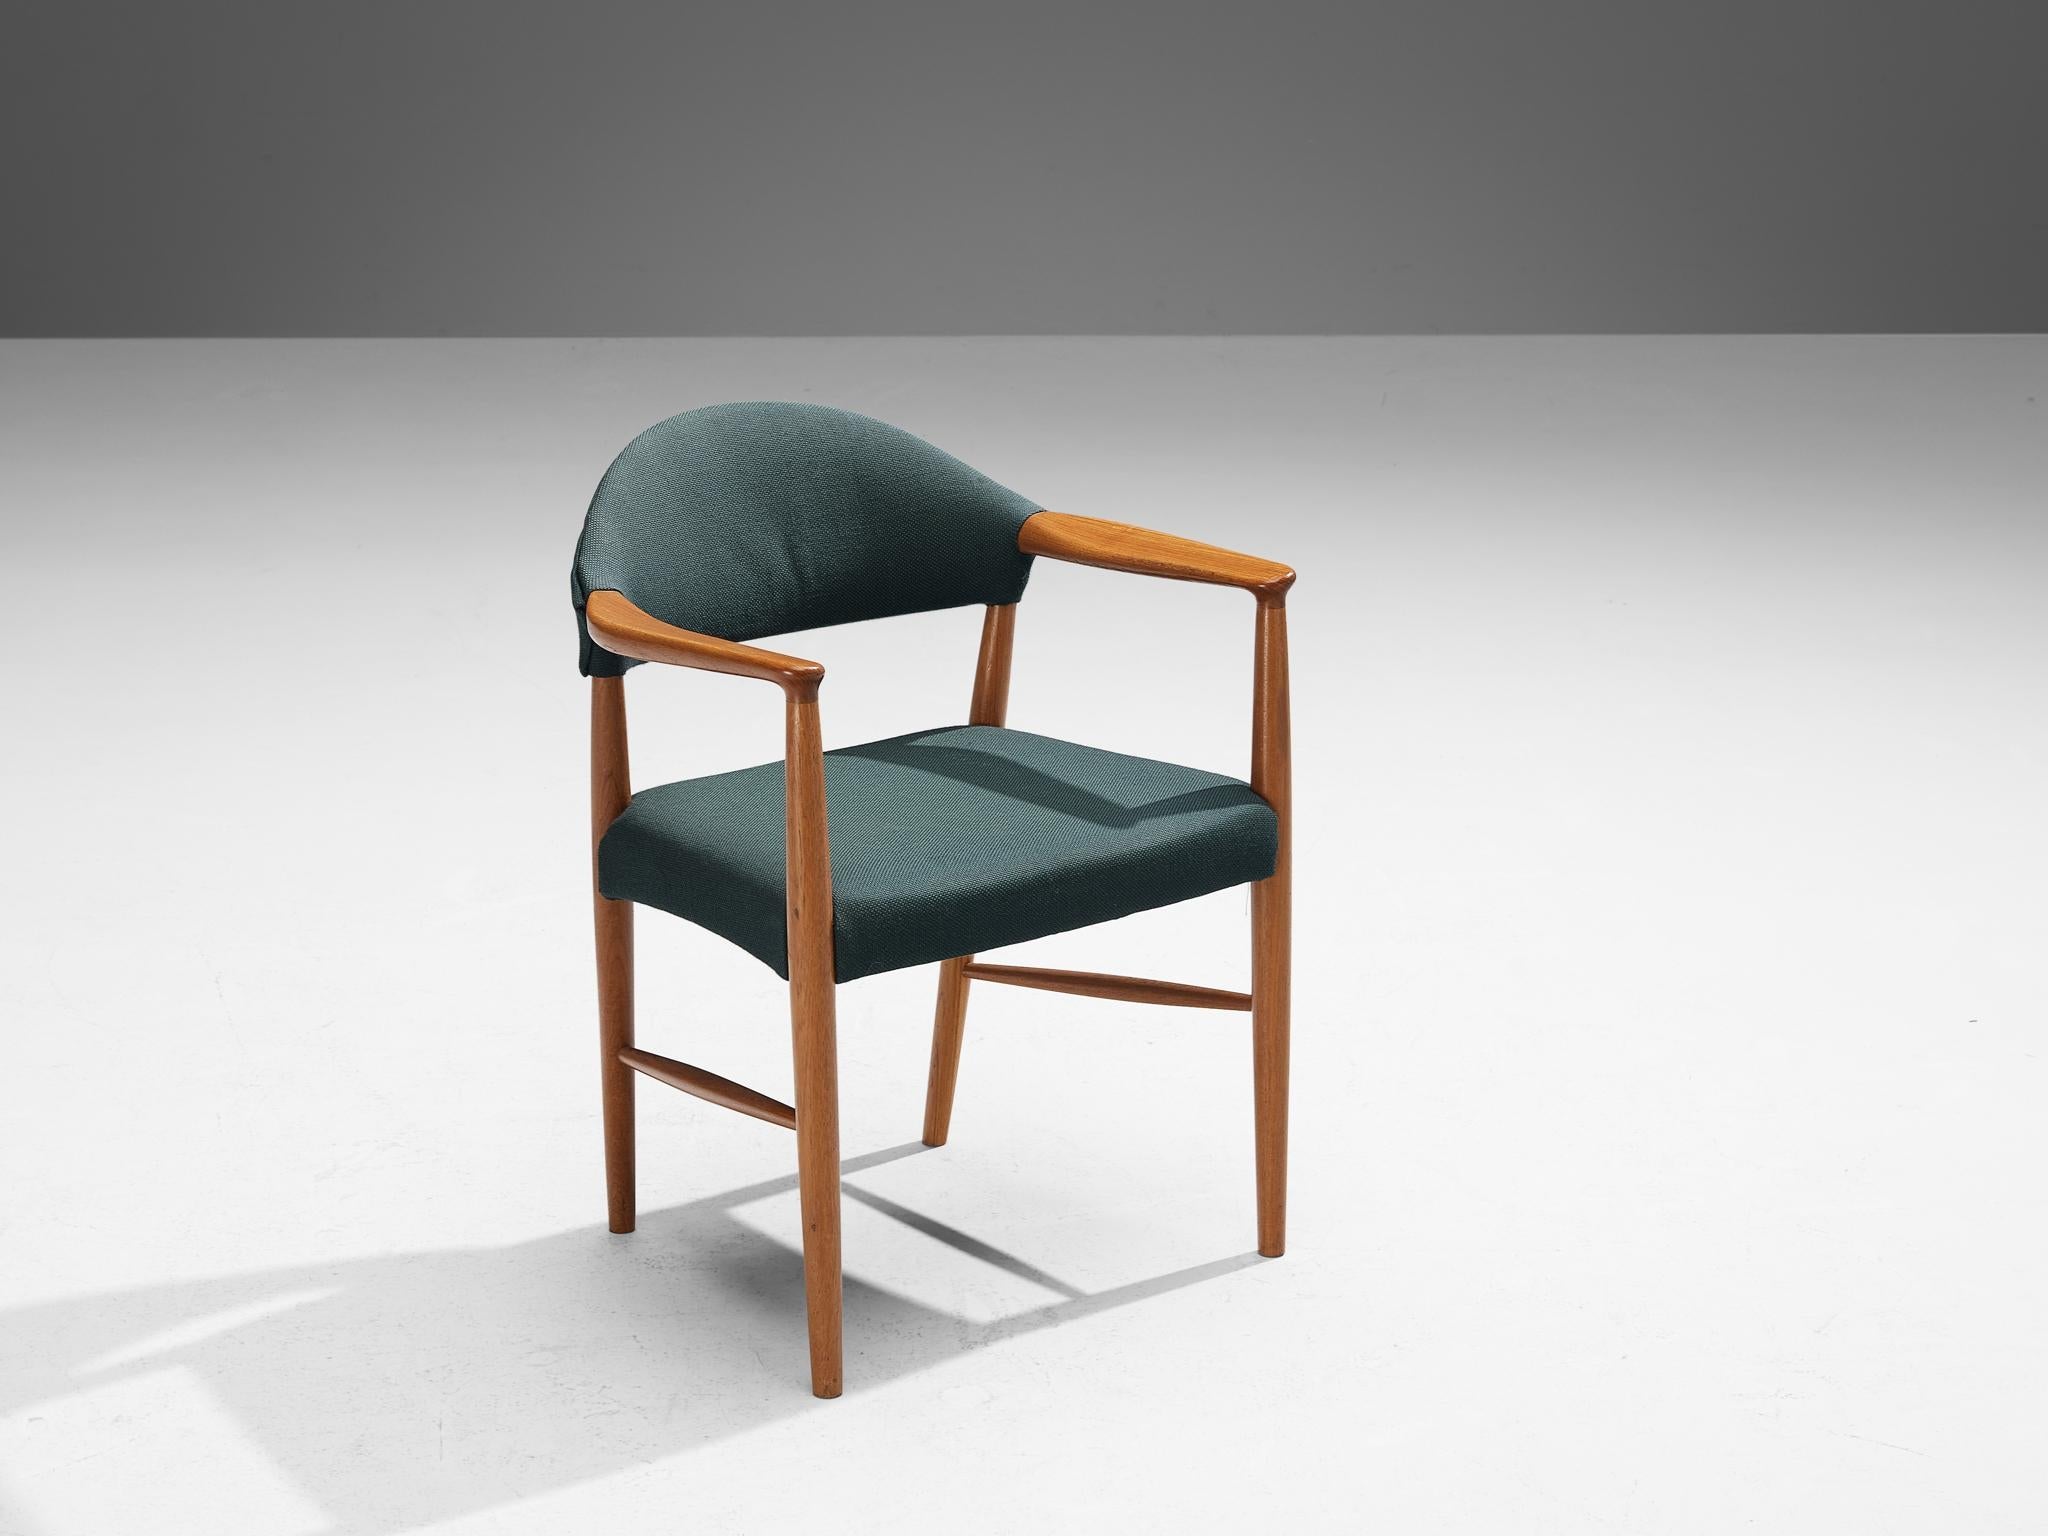 Kurt Olsen for Slagelse Mobelvaerk Armchairs in Teak and Green Upholstery